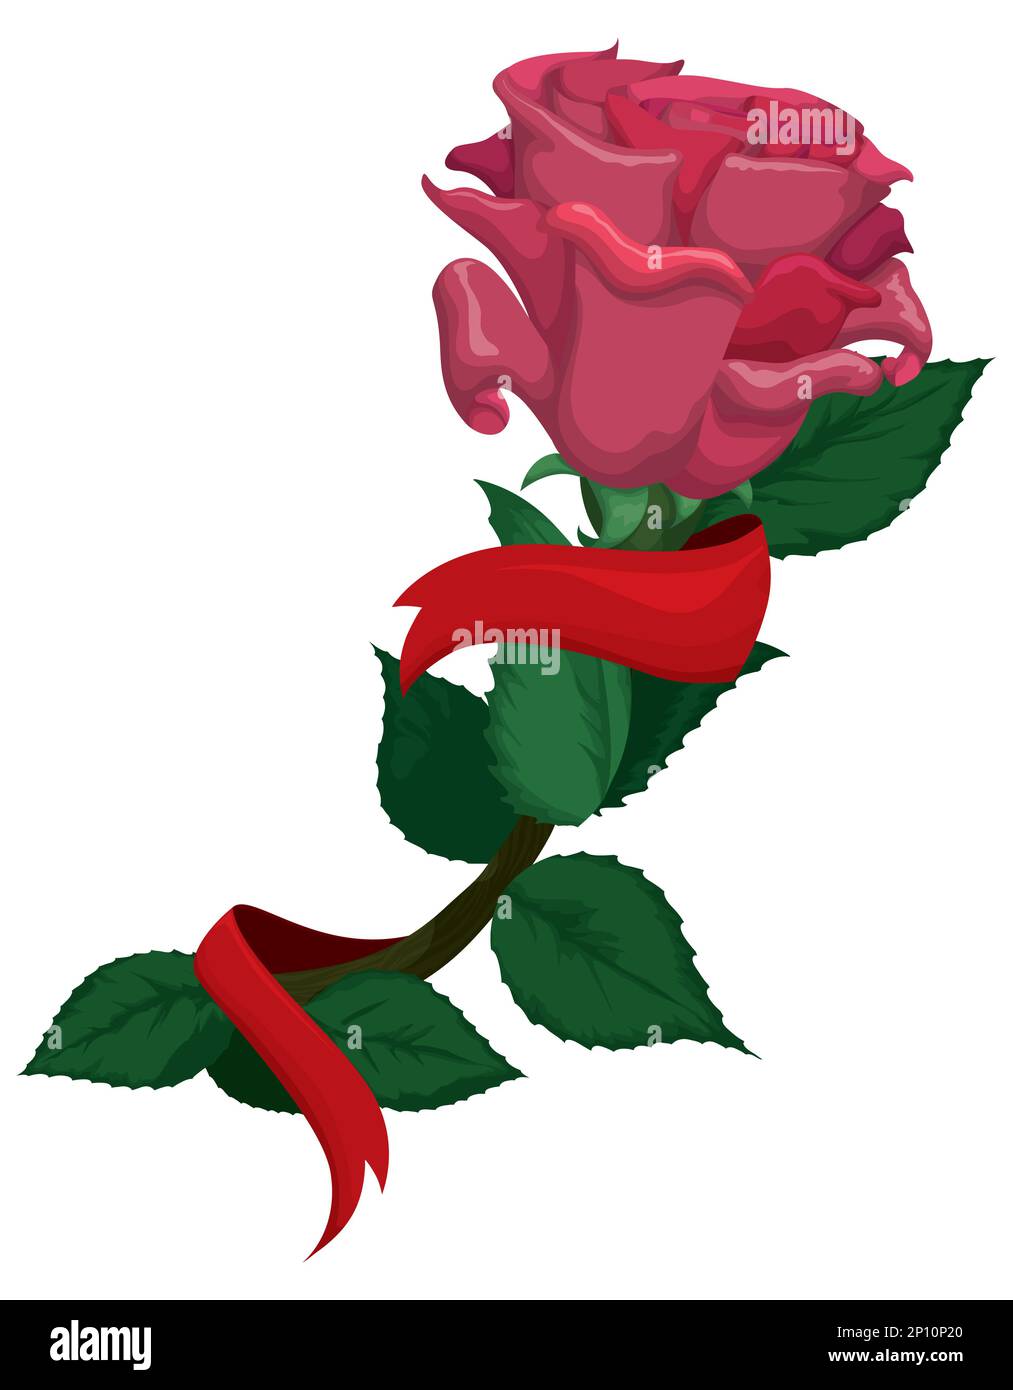 Rose isolée avec ruban rouge enroulé autour de la tige et des feuilles. Design de style dessin animé sur fond blanc. Illustration de Vecteur